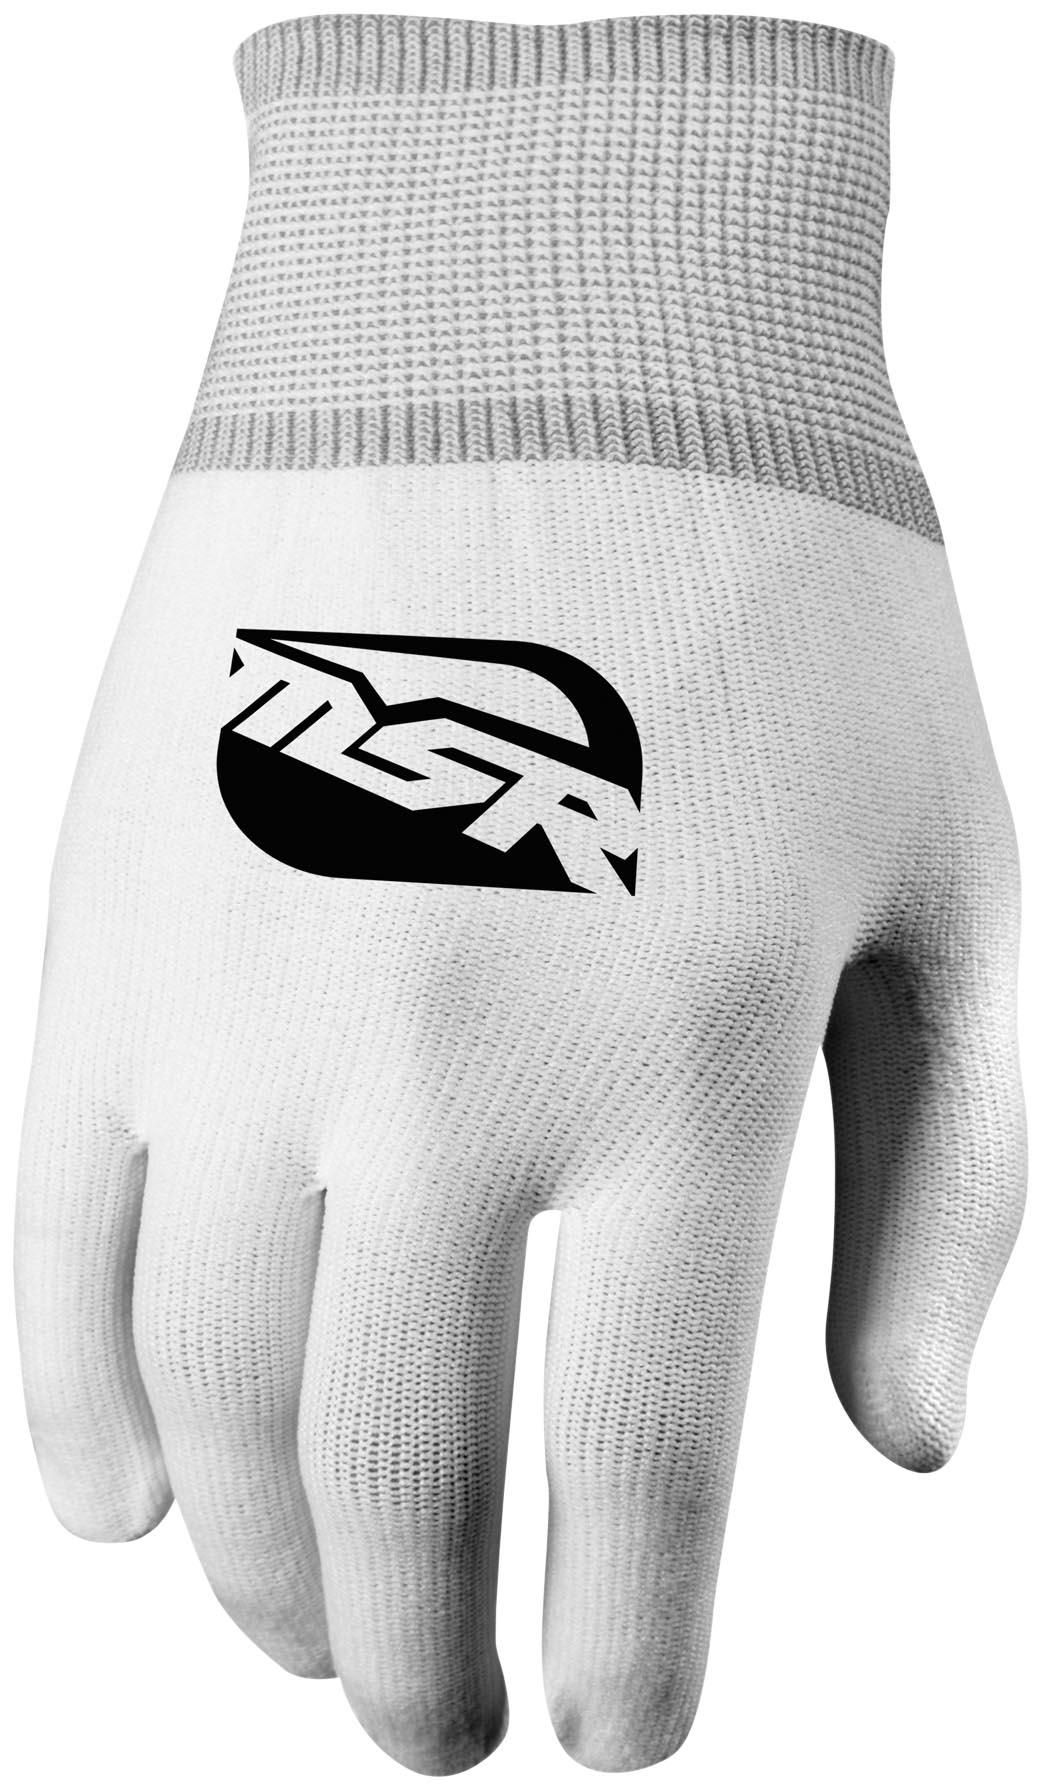 45RR-MSR-349091 Glove Liner - Full Finger